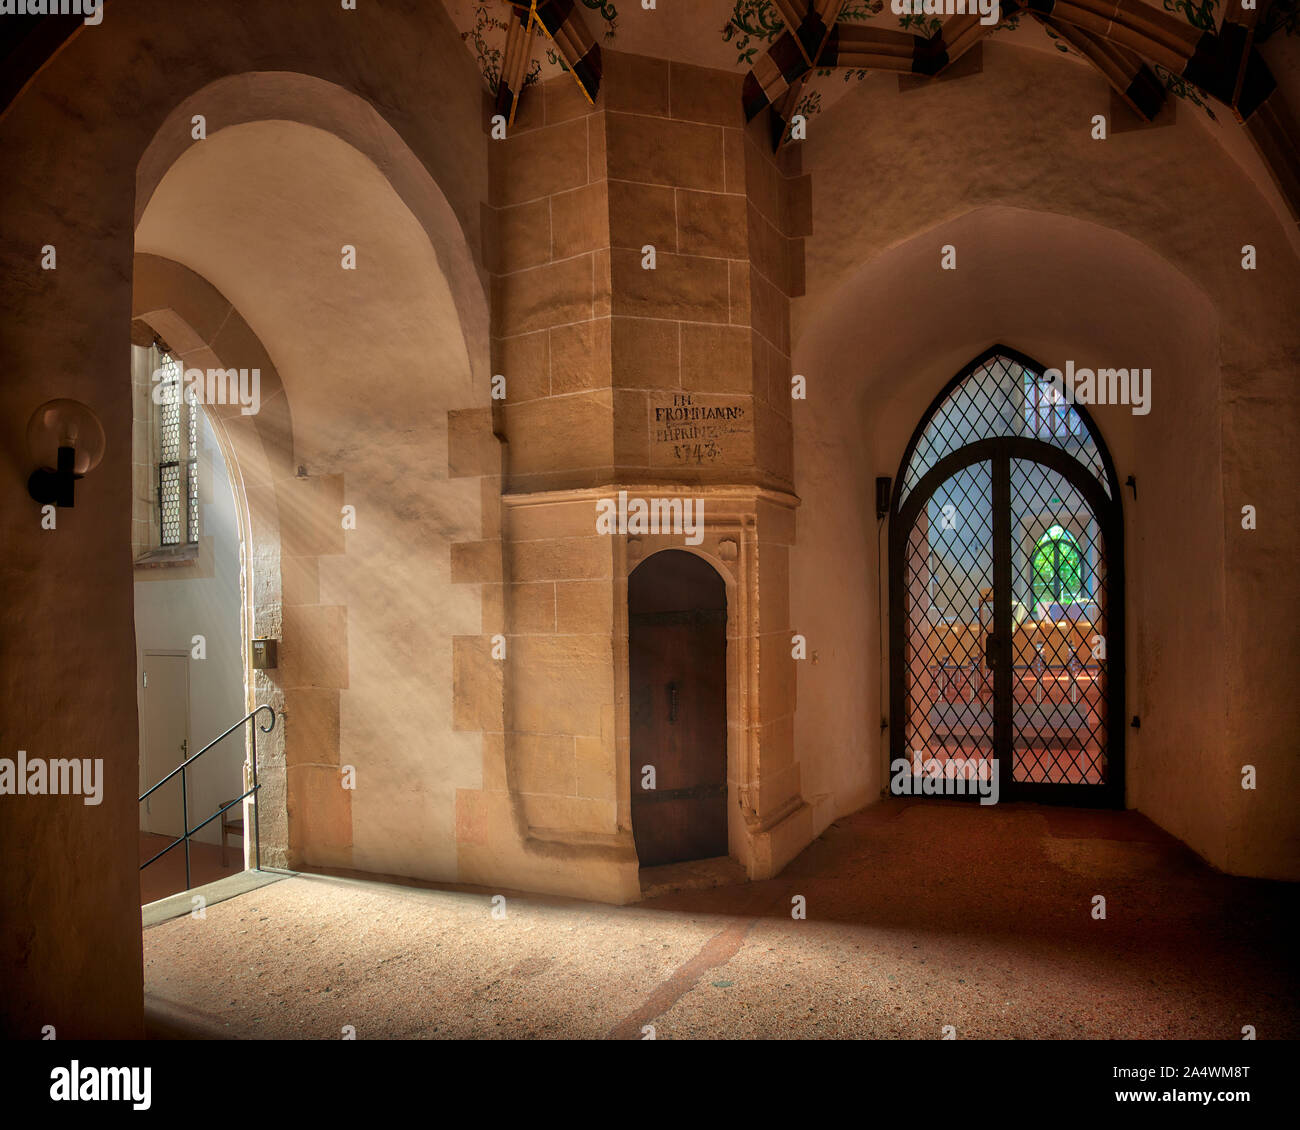 DE - BADEN-WÜRTTEMBERG: Interior Hall of Historic Blaubeuren Abbey Stock Photo